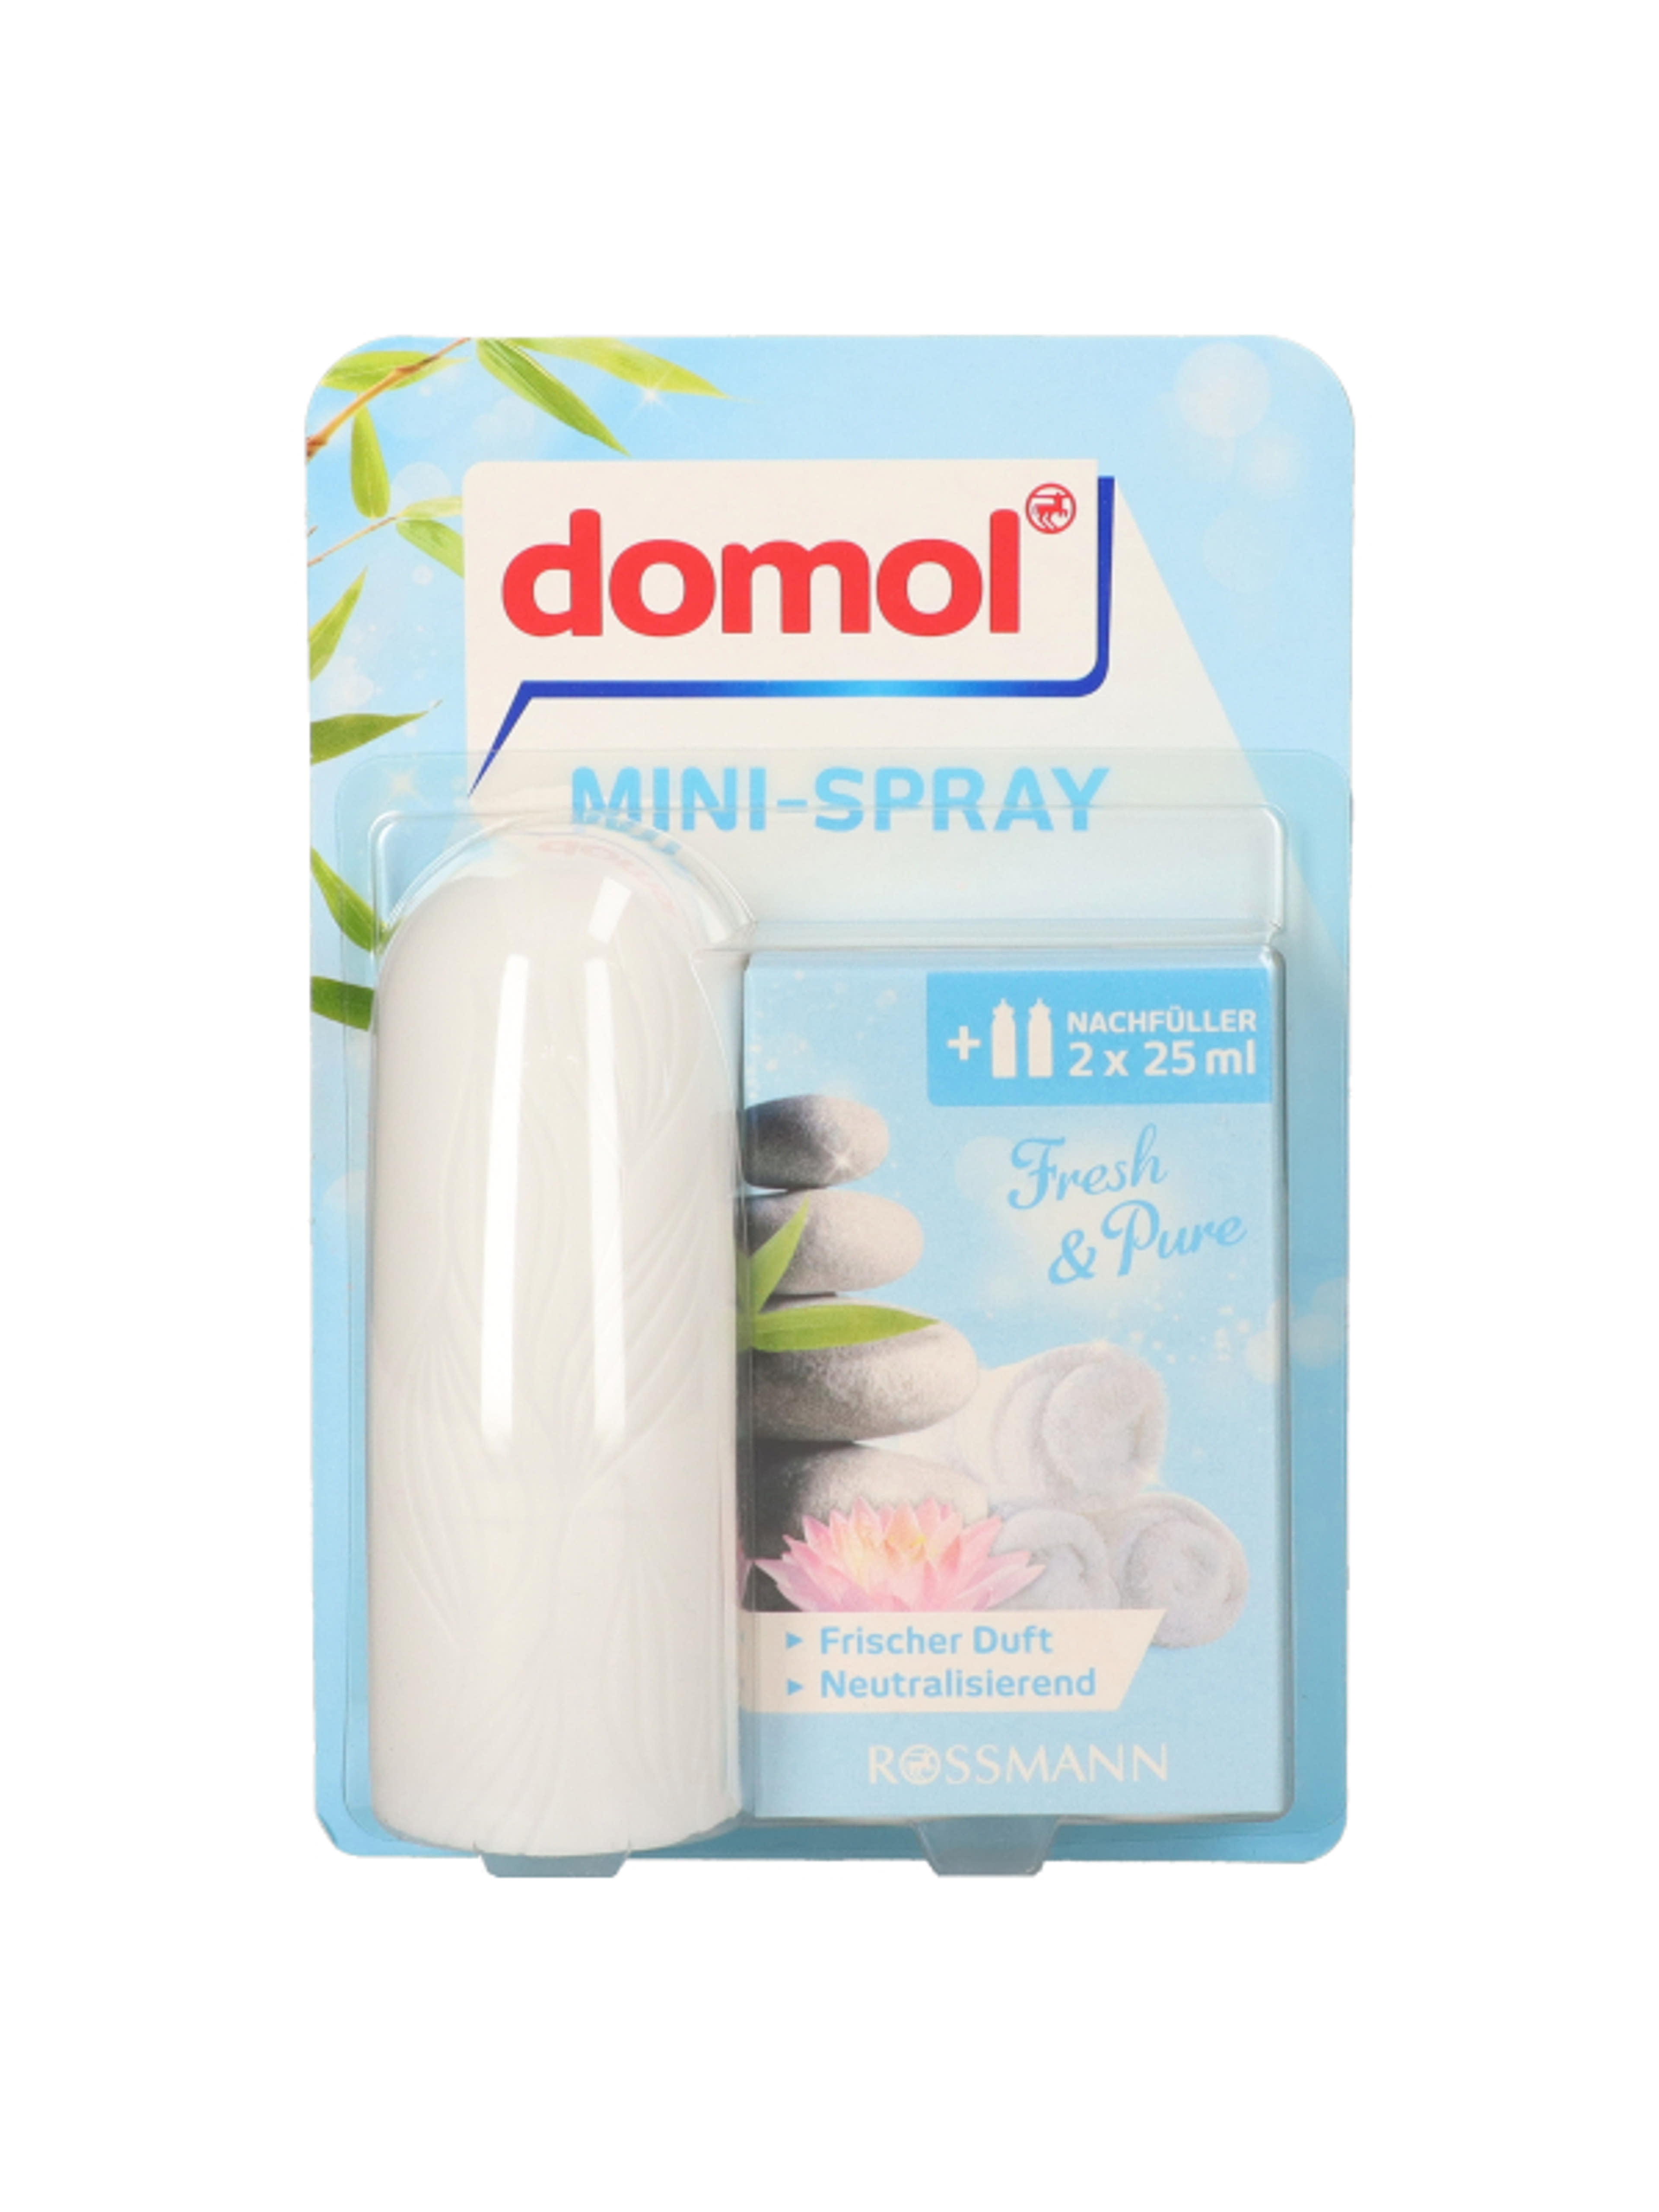 Domol Original Orange Mini-Spray - 50 ml